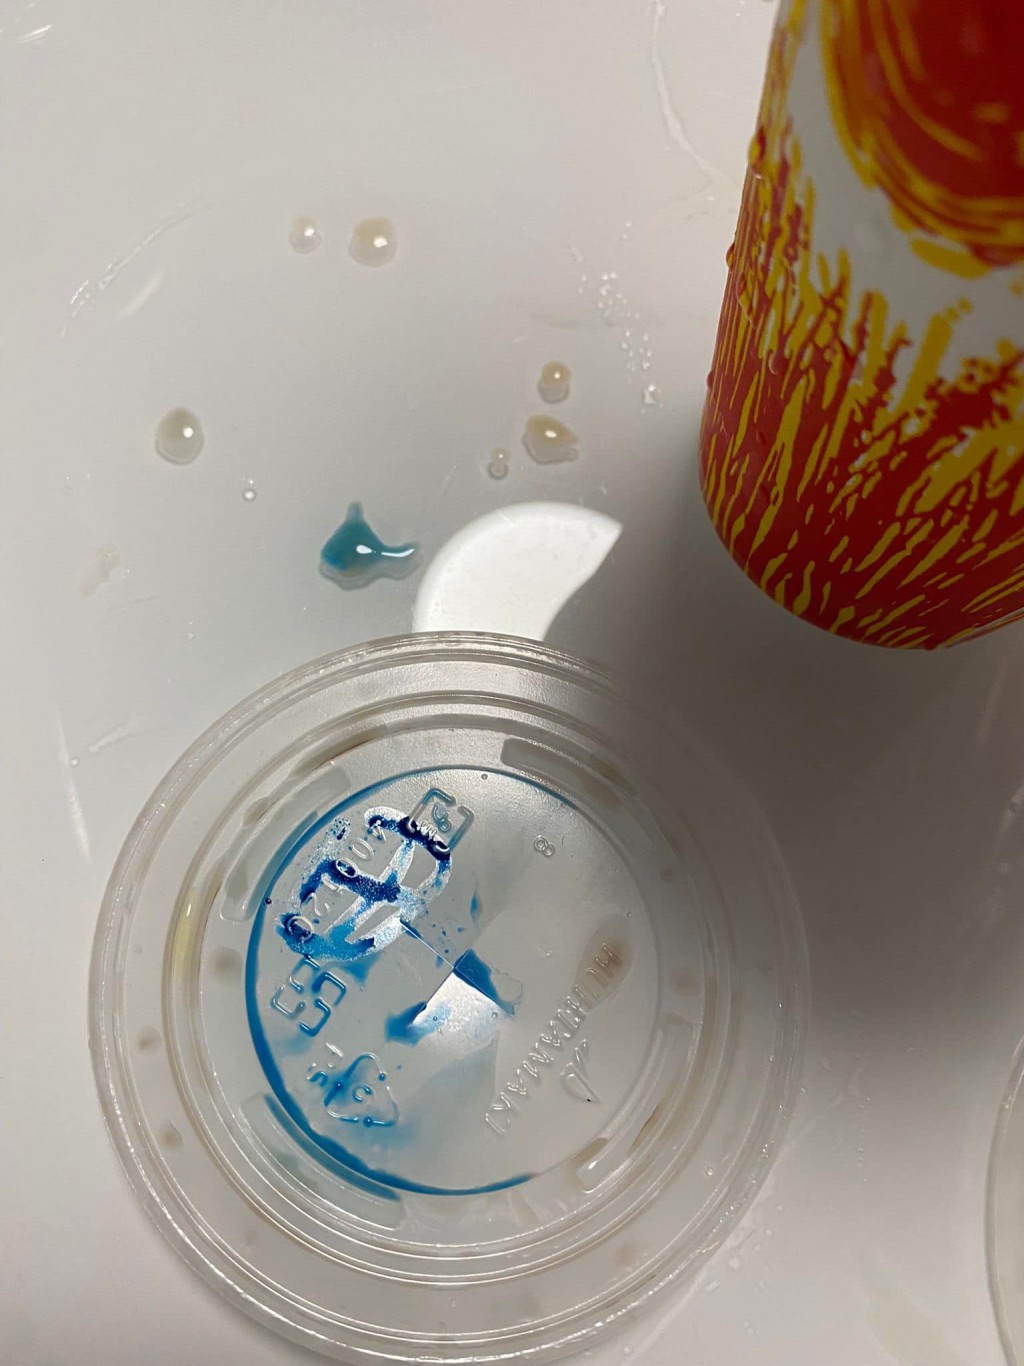 有市民發現外賣印品杯蓋上標示的墨水，溶在了飲品之中。群組將軍澳主場網民圖片